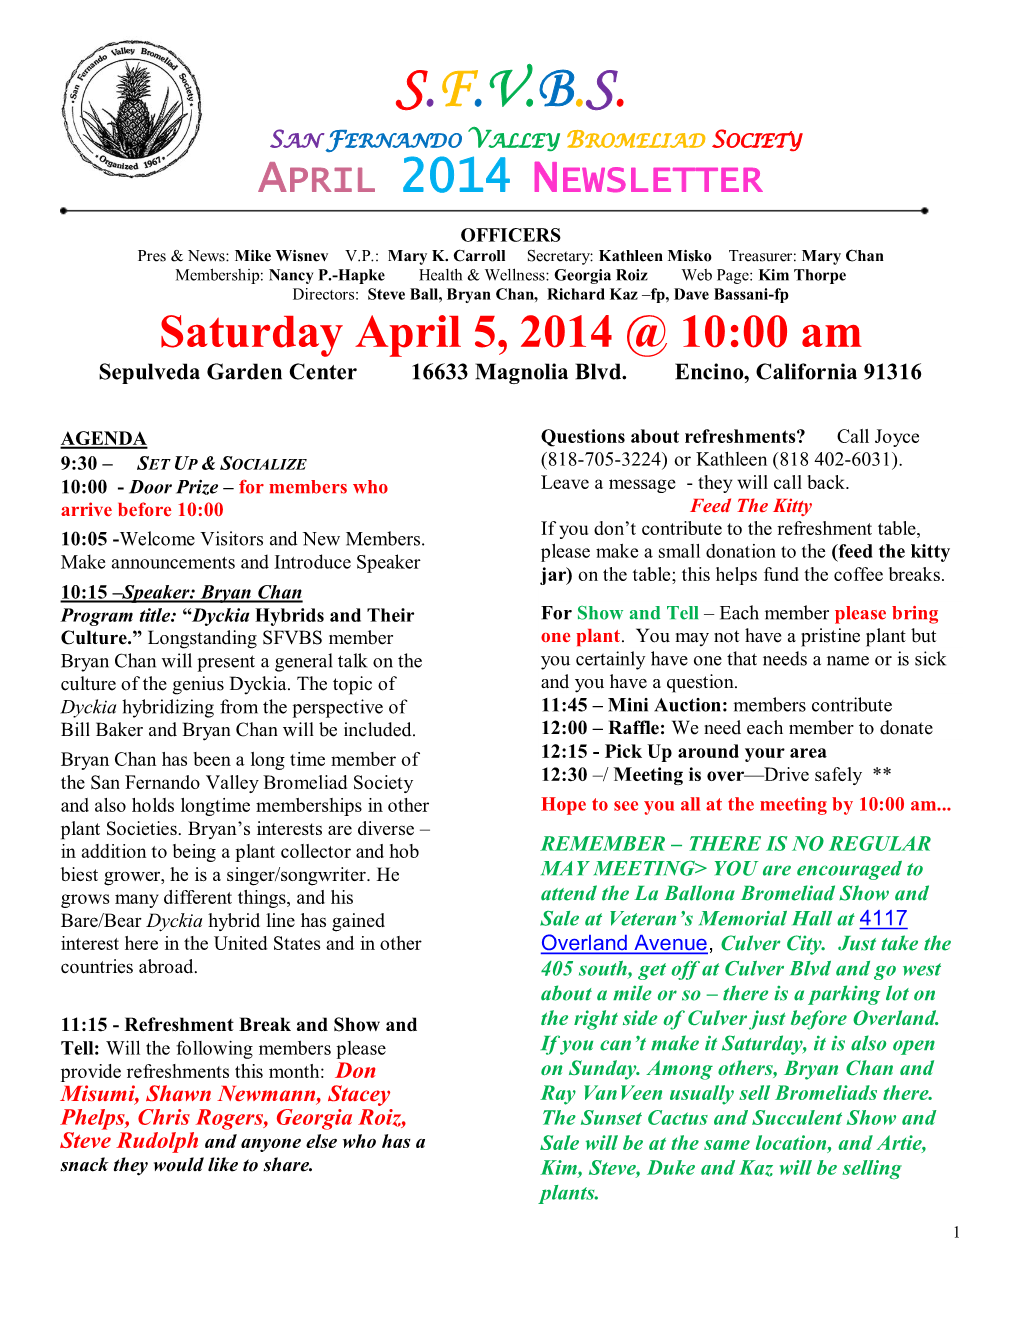 S.F.V.B.S. San Fernando Valley Bromeliad Society April 2014 Newsletter